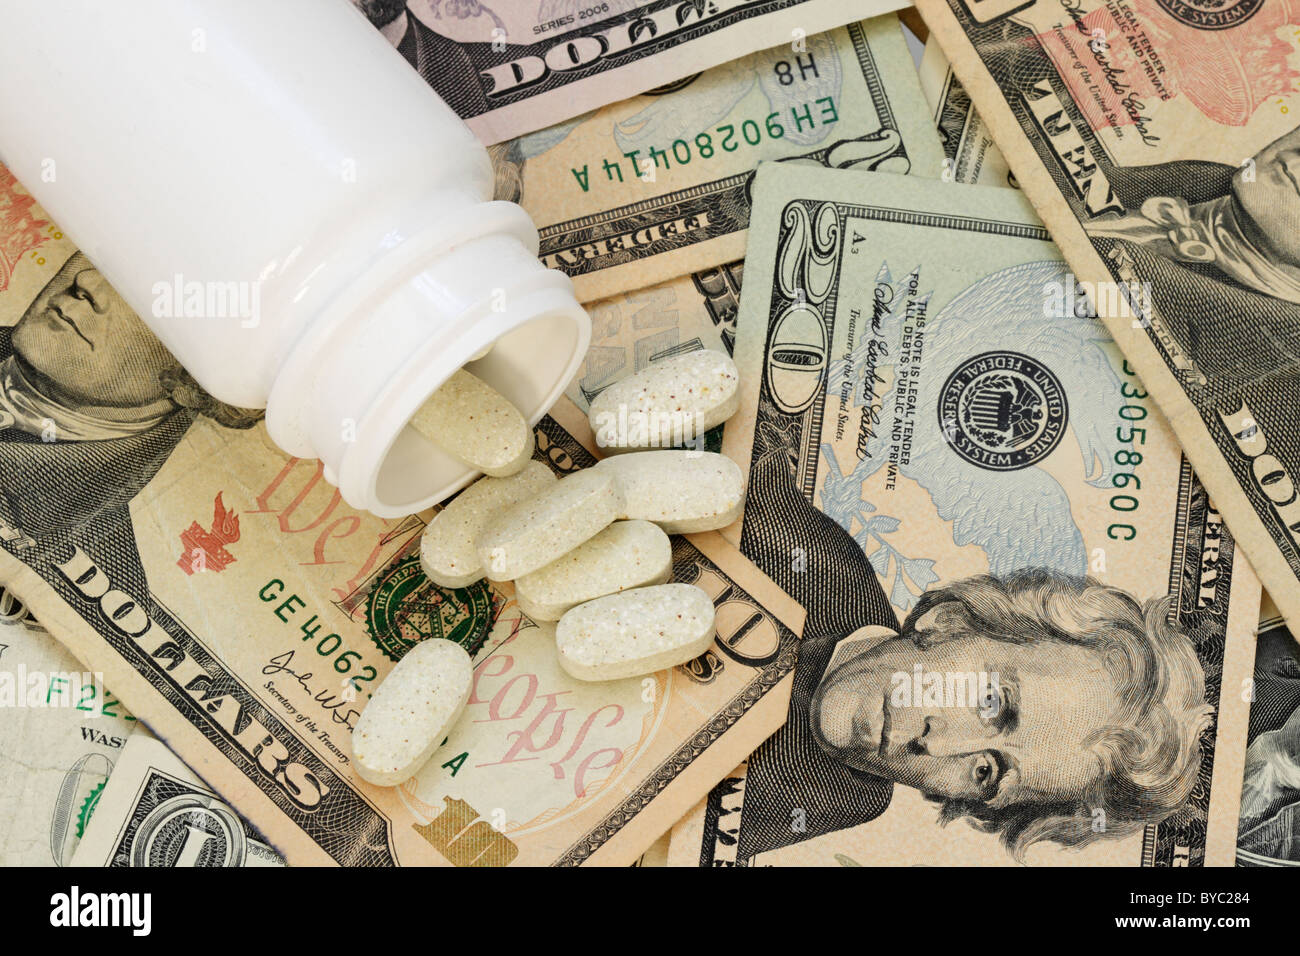 Pastilla blanca frasco de tabletas de pastillas de drogas derramando sobre un fondo de dinero de papel estadounidenses ilustrando el alto costo de los medicamentos Foto de stock